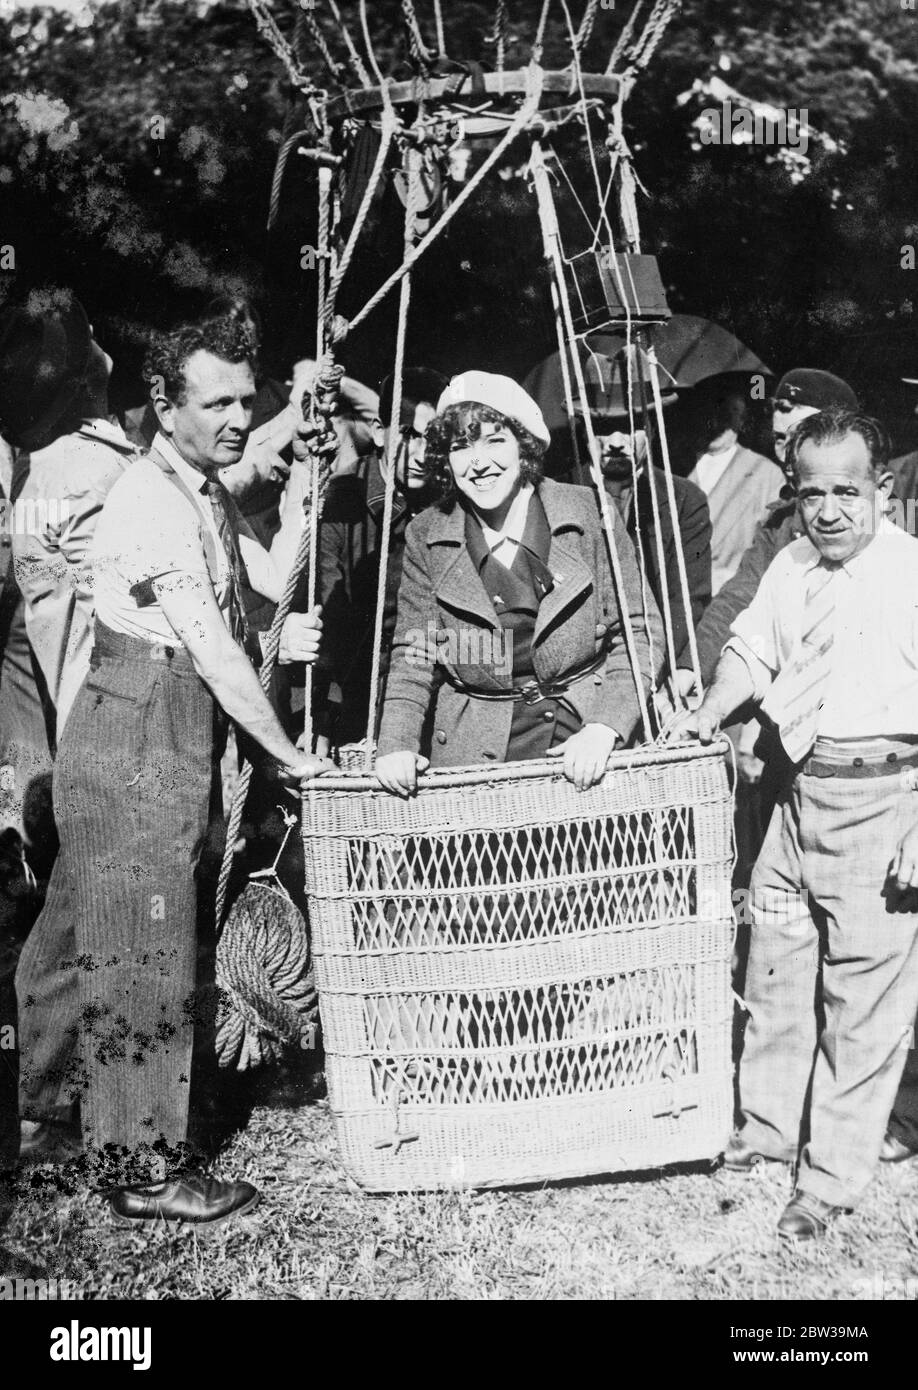 Solo donna in grande gara mongolfiera . Madame Weber nel cesto della sua mongolfiera all'inizio della gara nei pressi di Parigi . 22 luglio 1935 Foto Stock